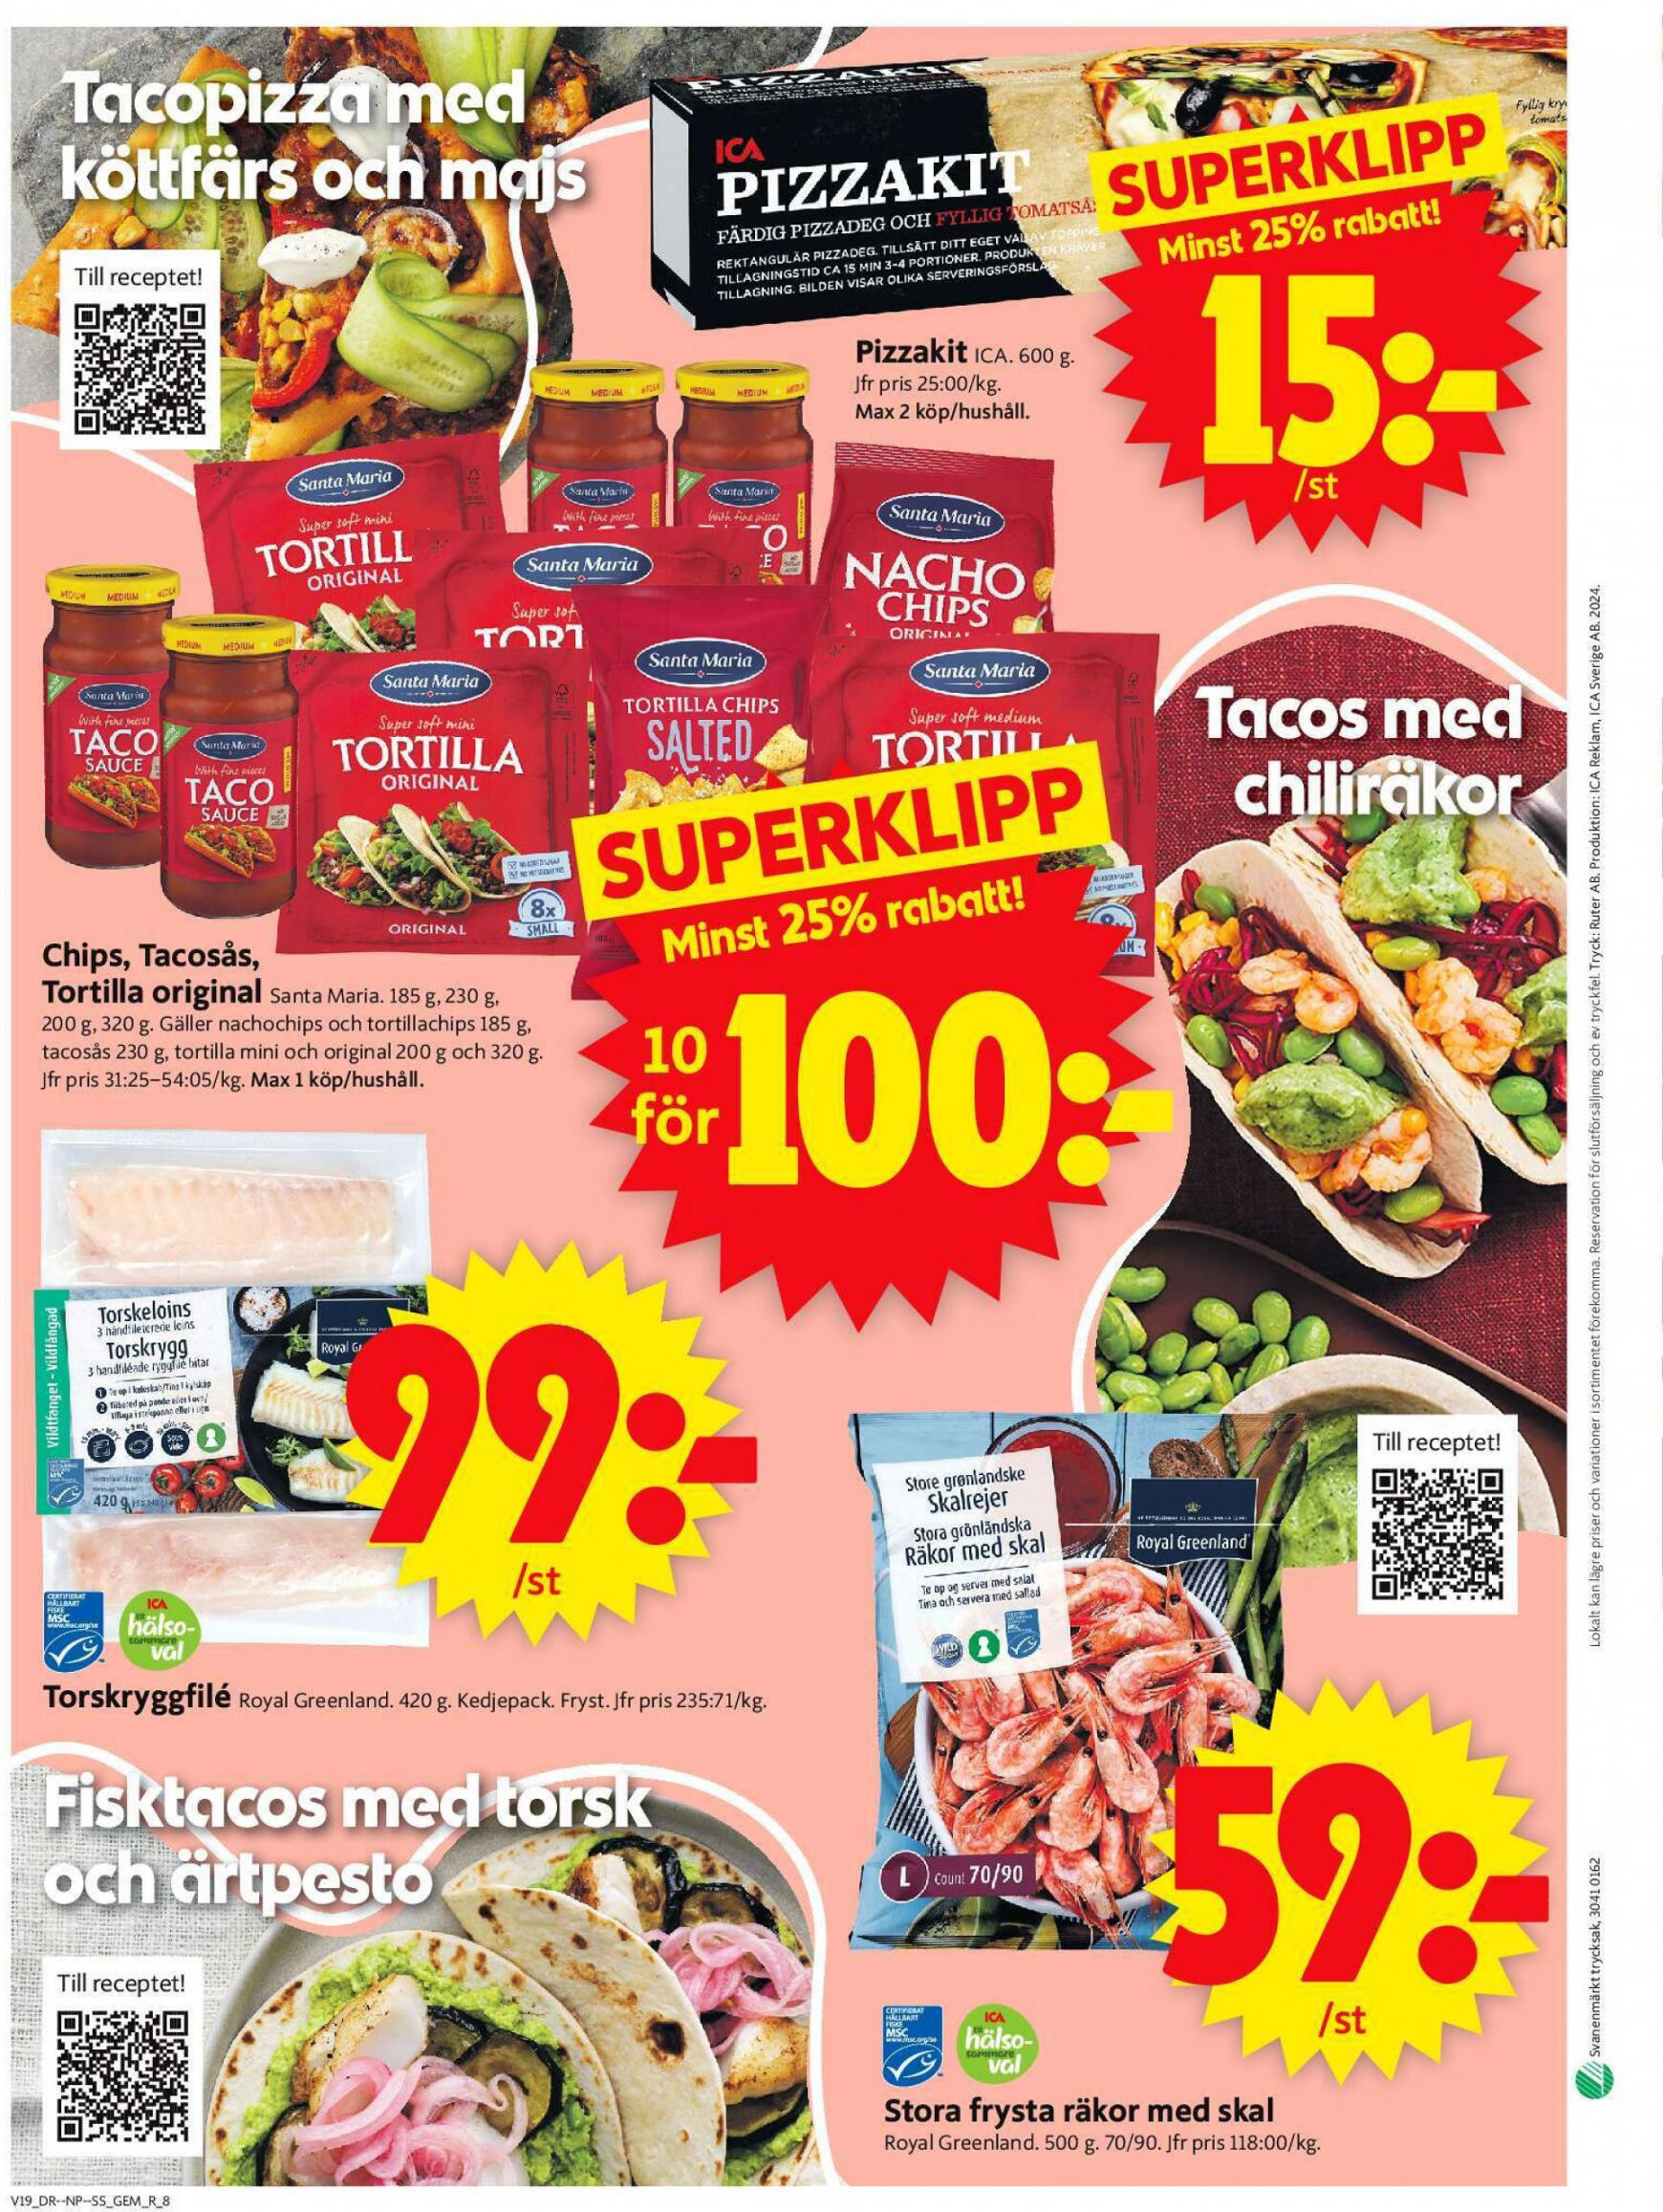 ica-supermarket - Flyer ICA Supermarket current 06.05. - 12.05. - page: 10